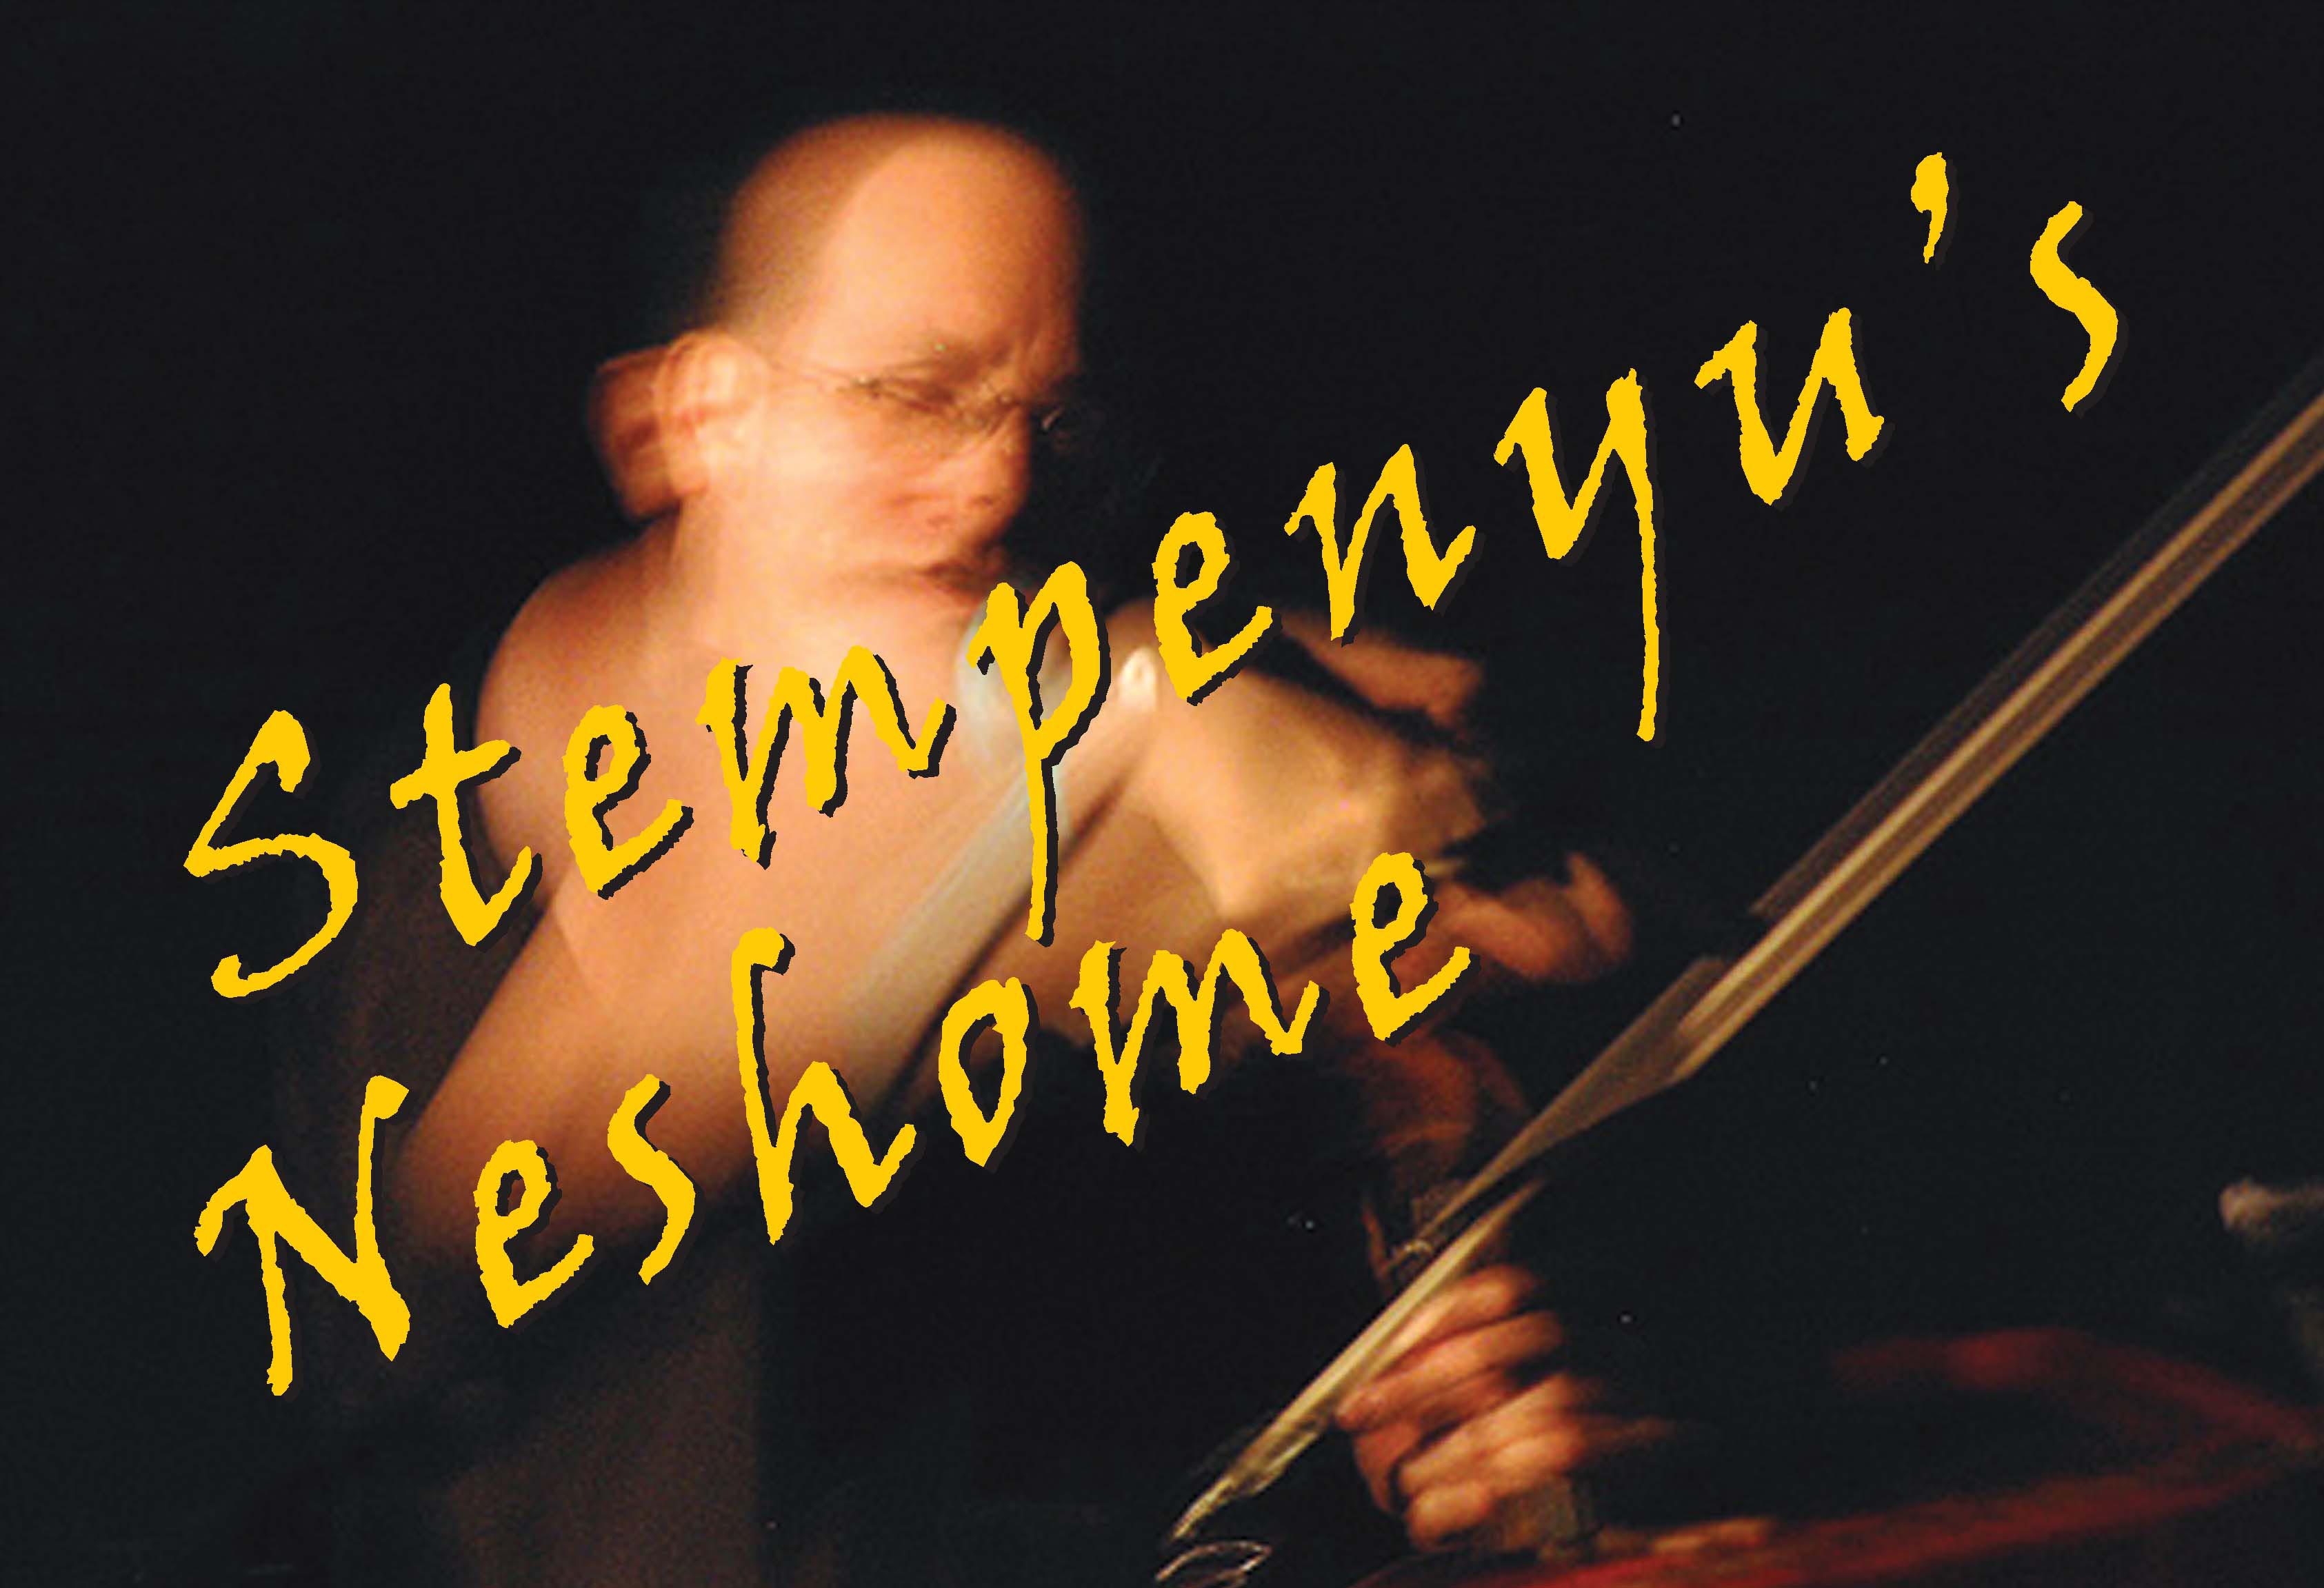 Stempenyu's Neshome